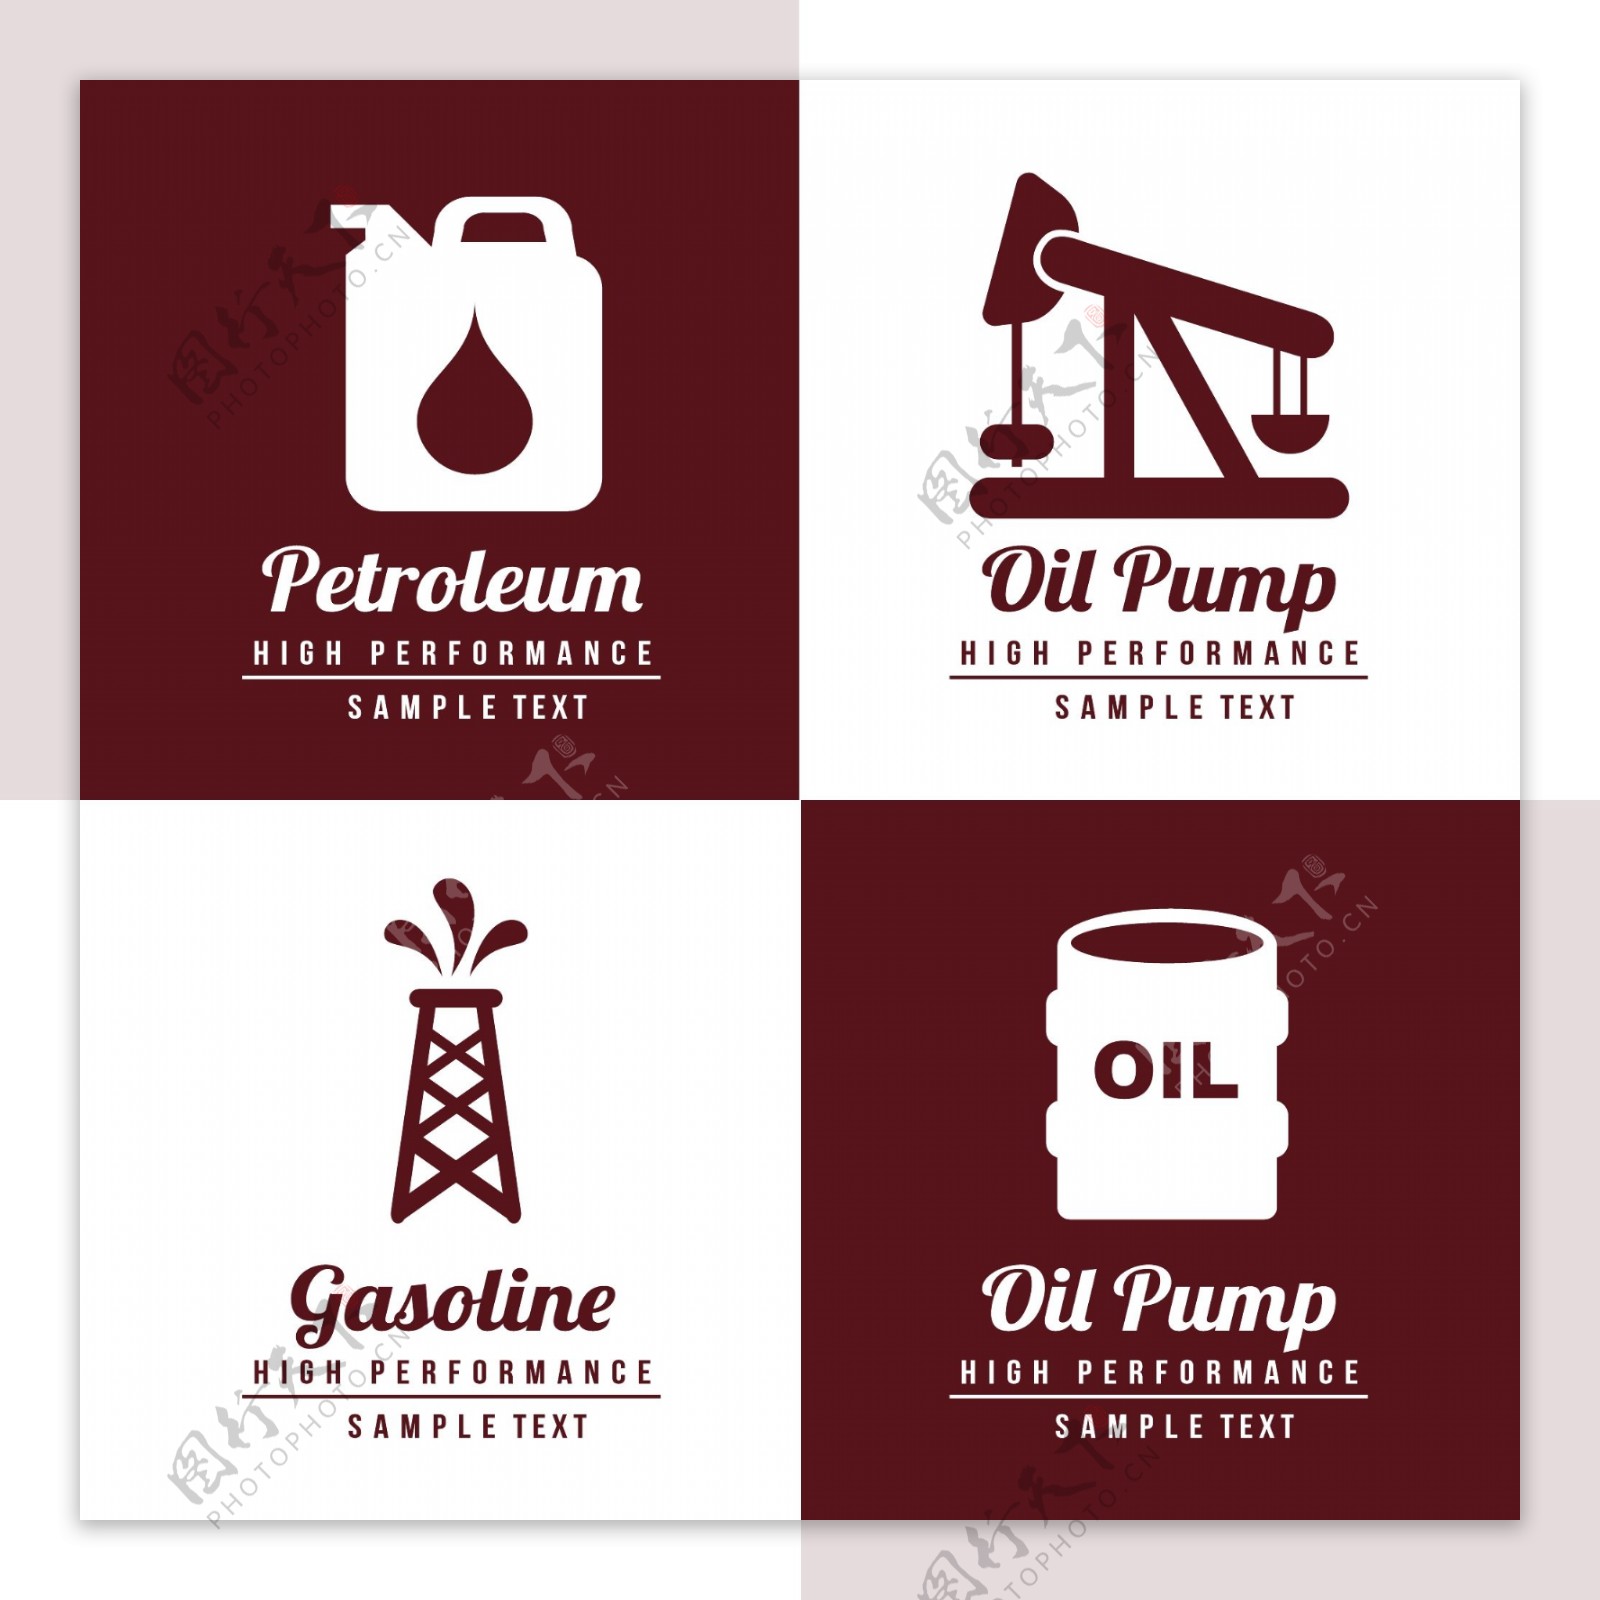 石油天然气